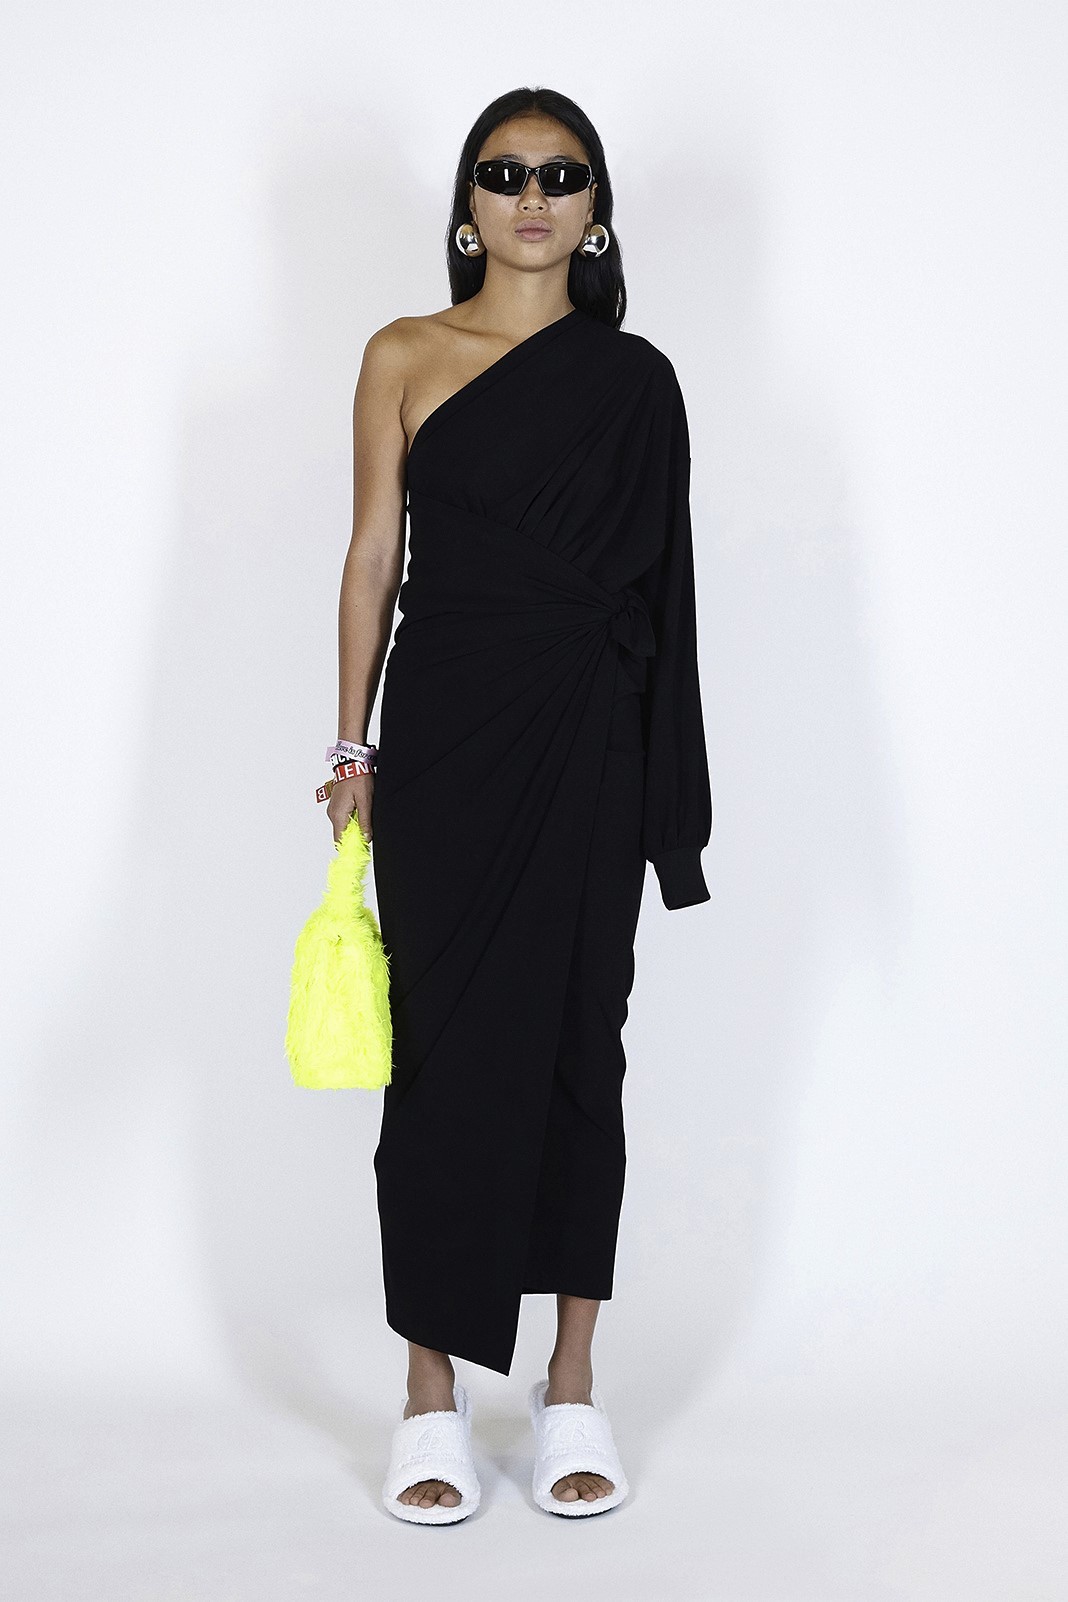 Balenciaga Spring/Summer 2021 Ready-to-Wear Collection